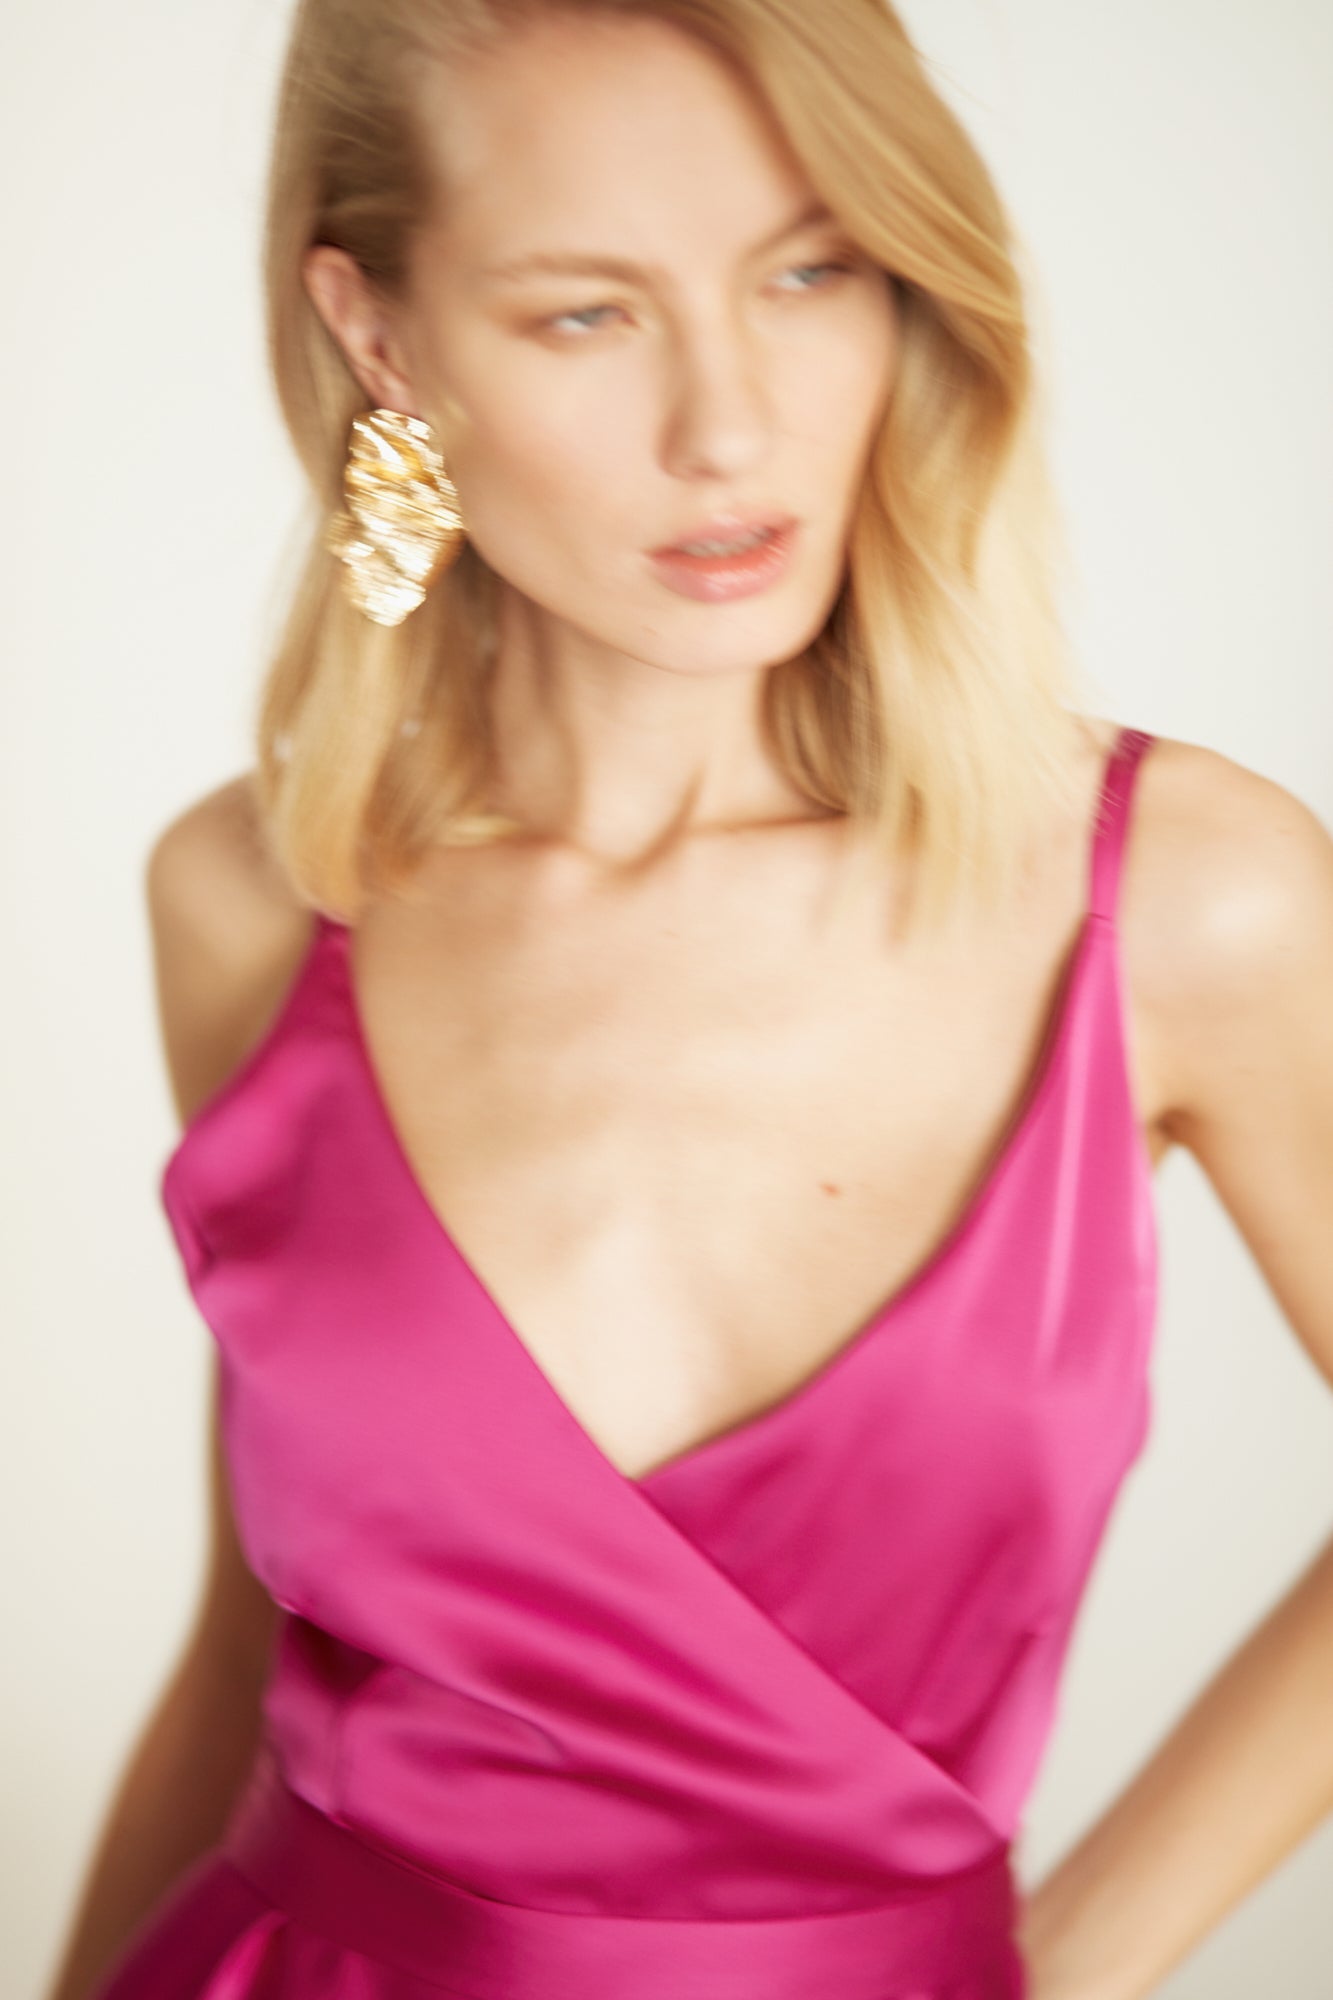 Shop Undress Freya Fuchsia Pink Satin Long Evening Dress